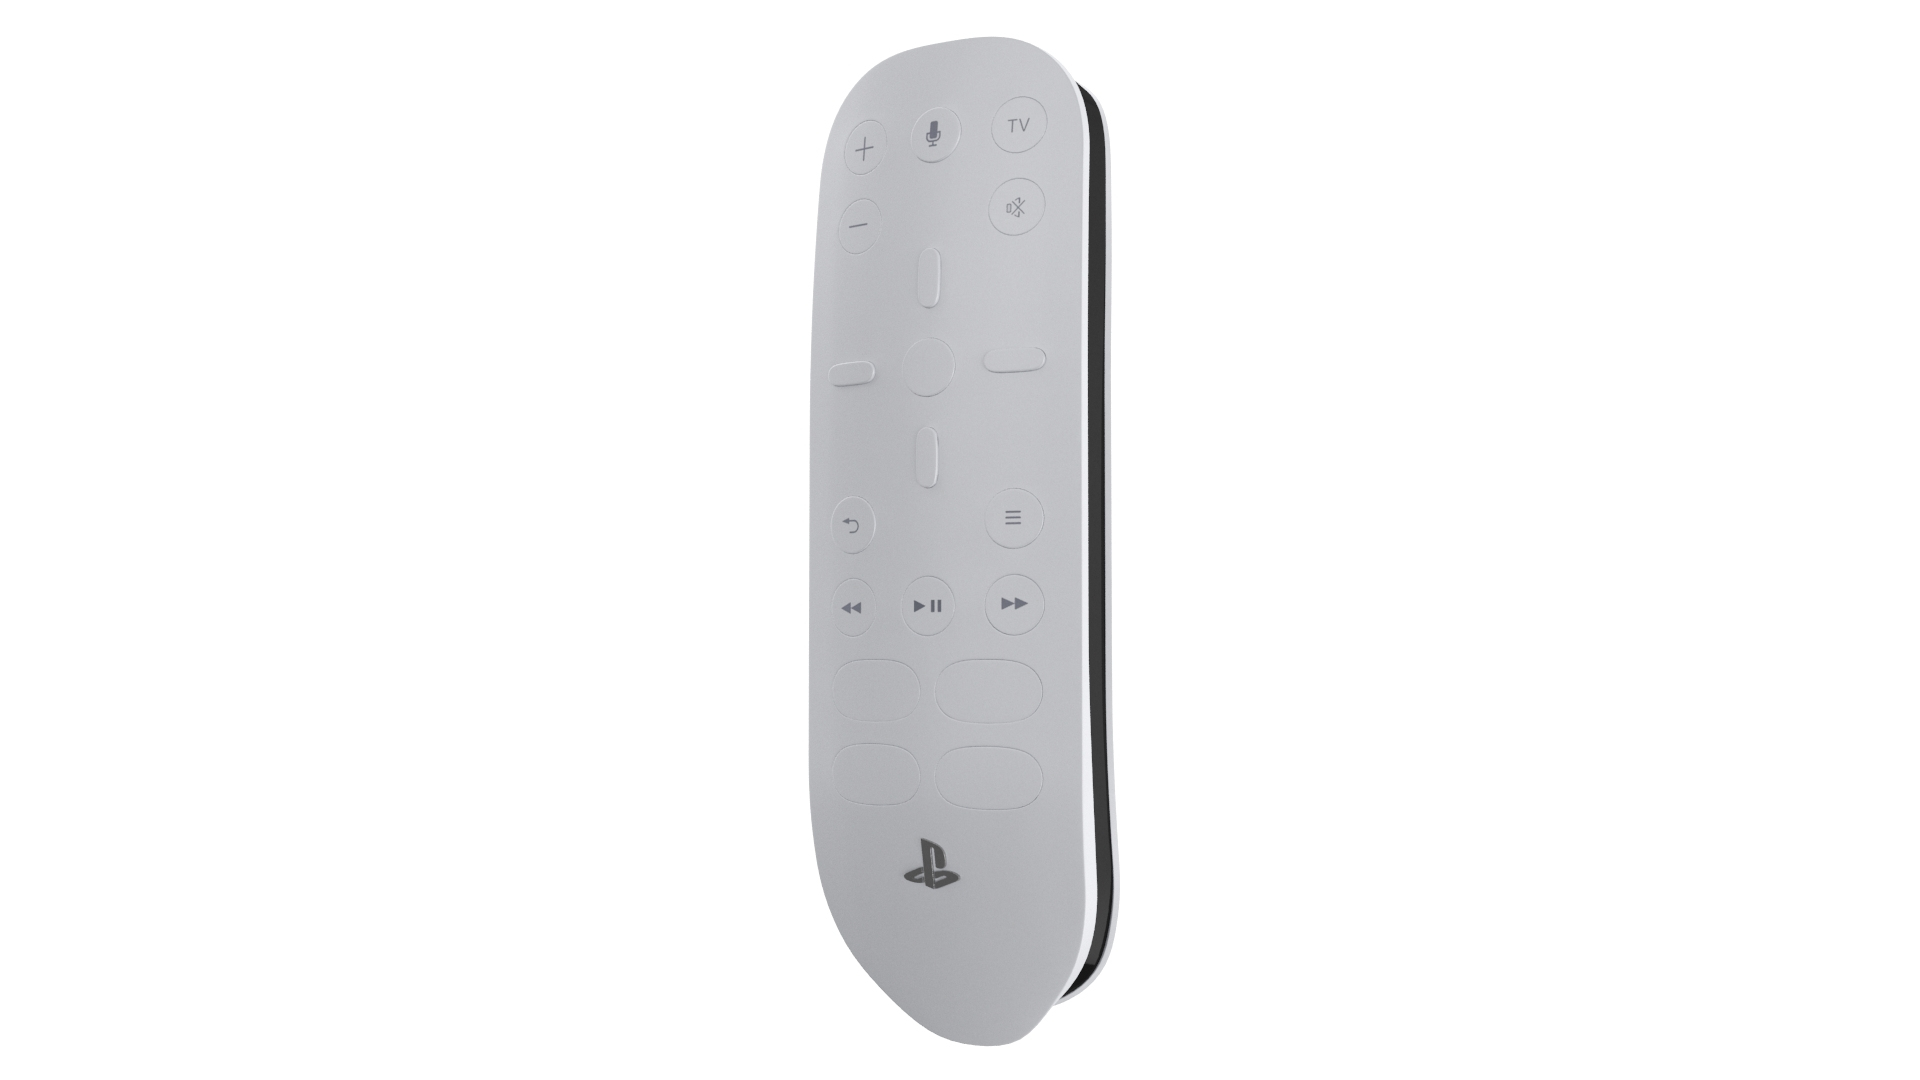 Modello 3D Tre accessori per PlayStation 5 - TurboSquid 1740218